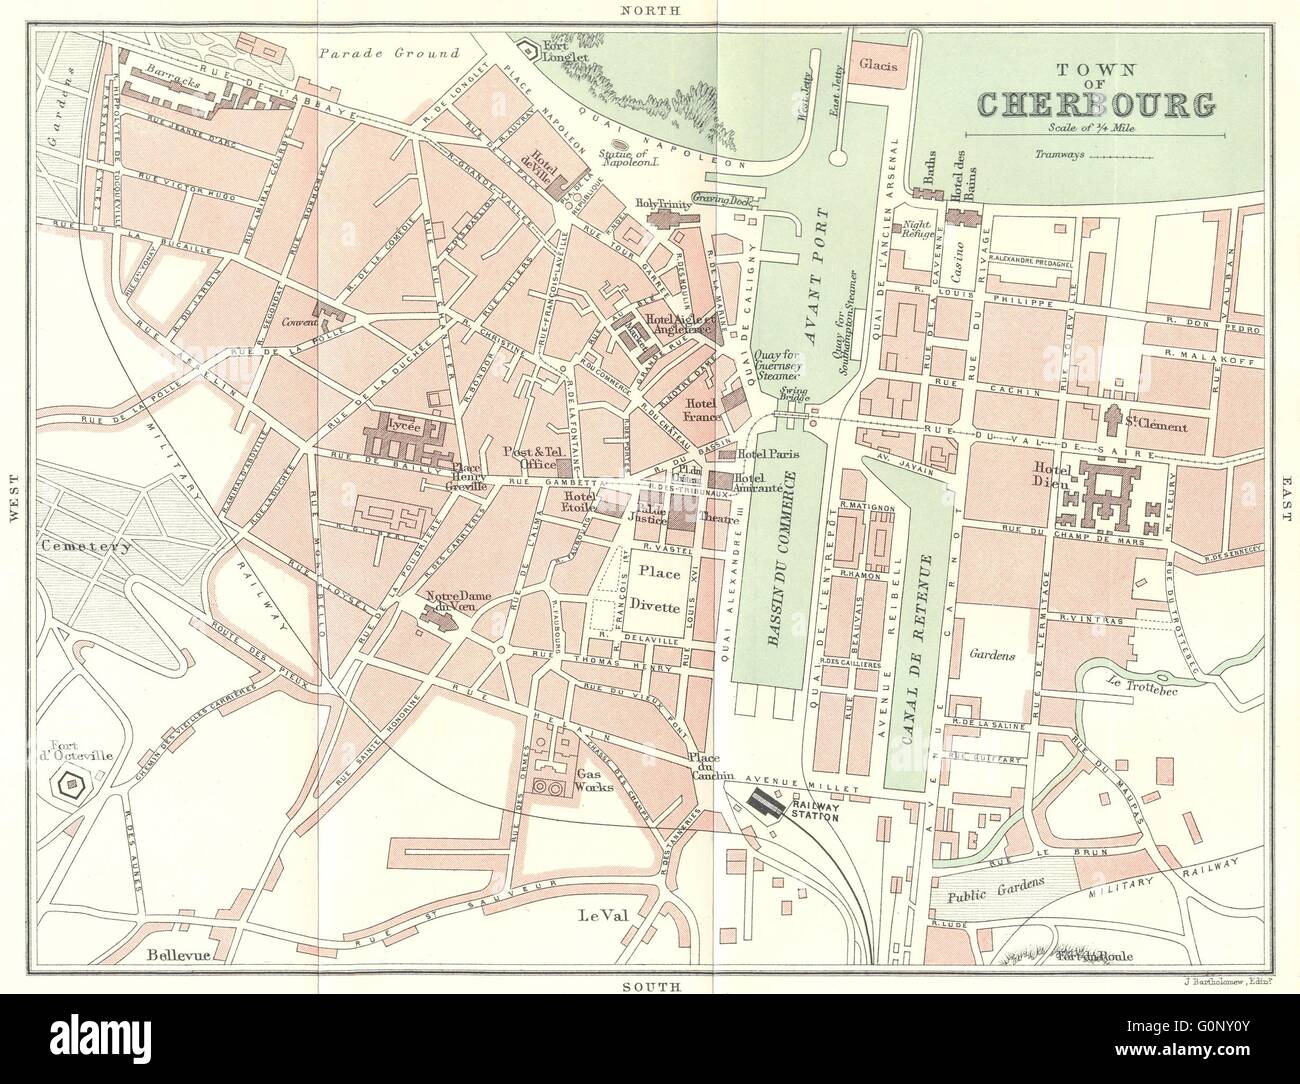 MANCHE: Cherbourg plan de ville town, 1913 antique map Stock Photo